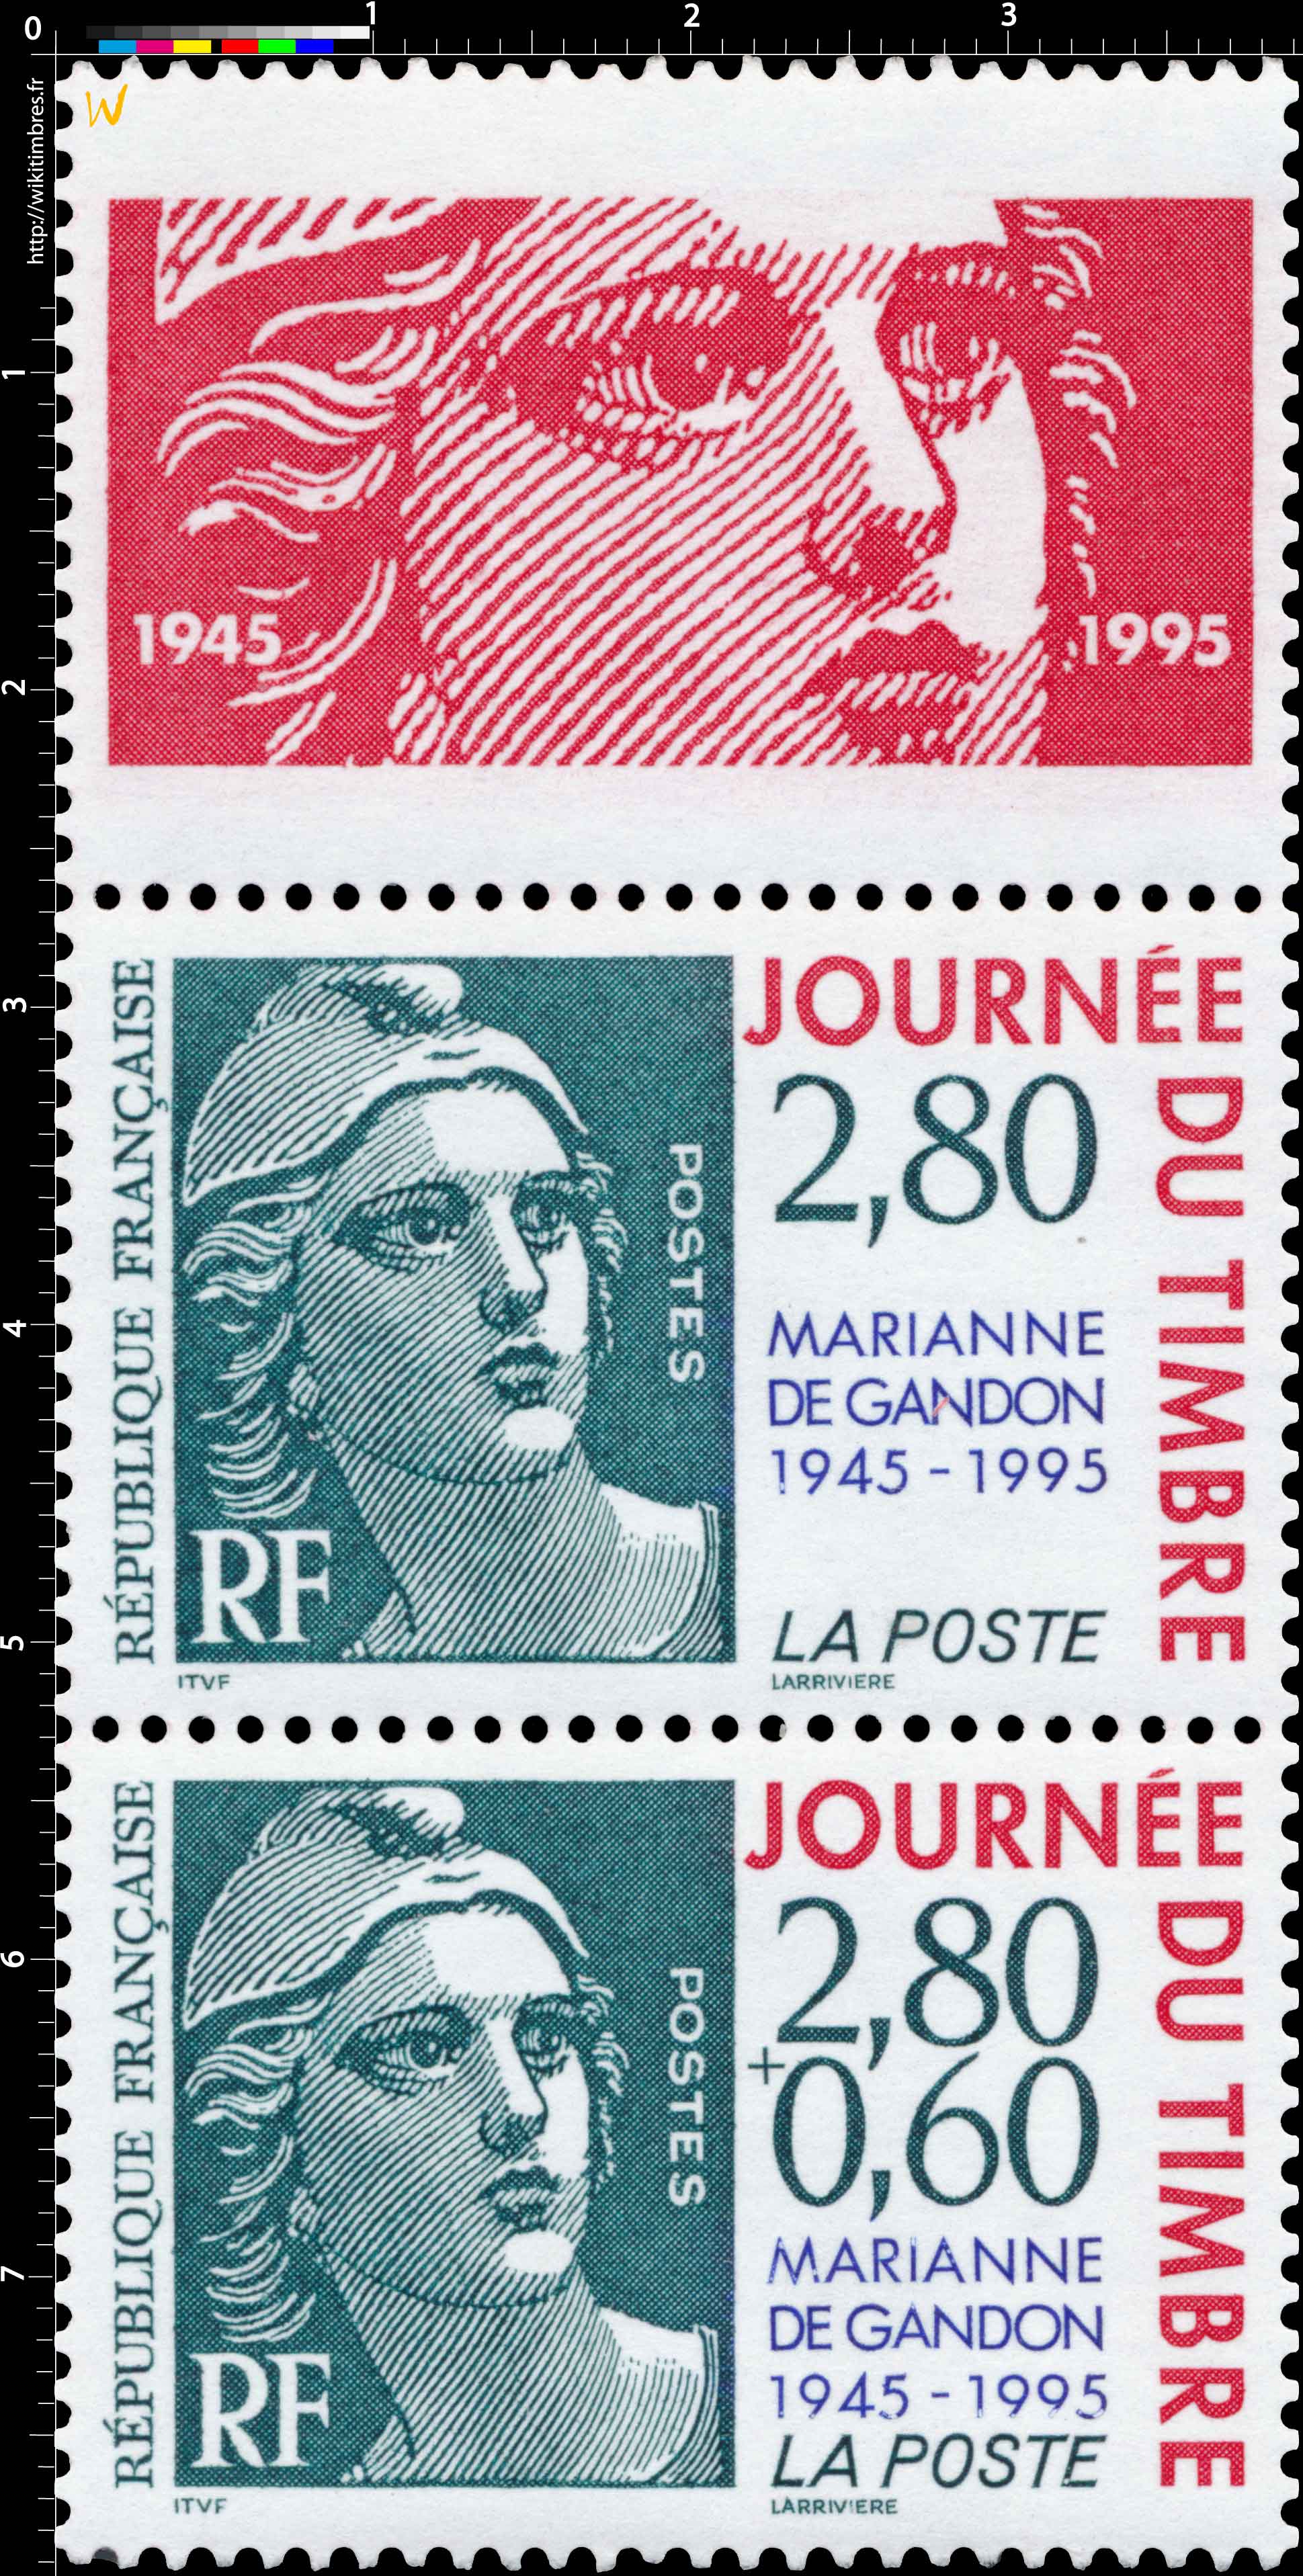 JOURNÉE DU TIMBRE MARIANNE DE GANDON 1945-1995